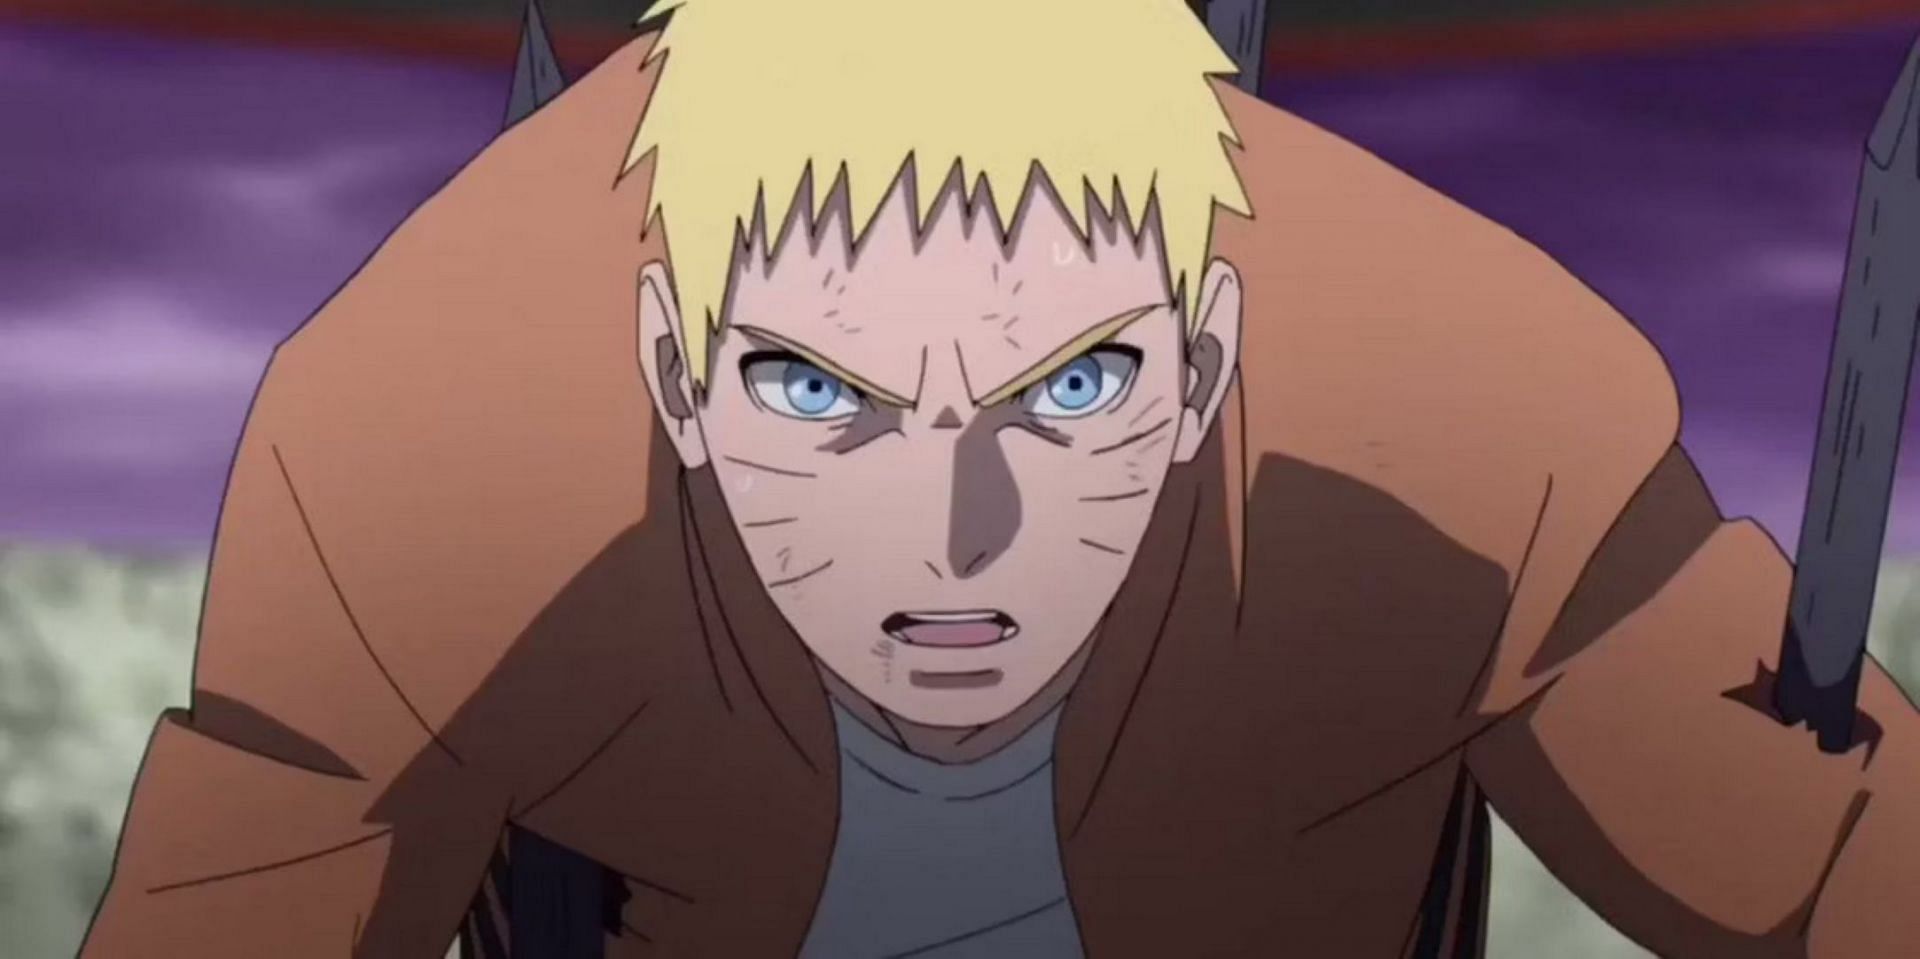 Hogake Naruto (Image Studio Pierrot)